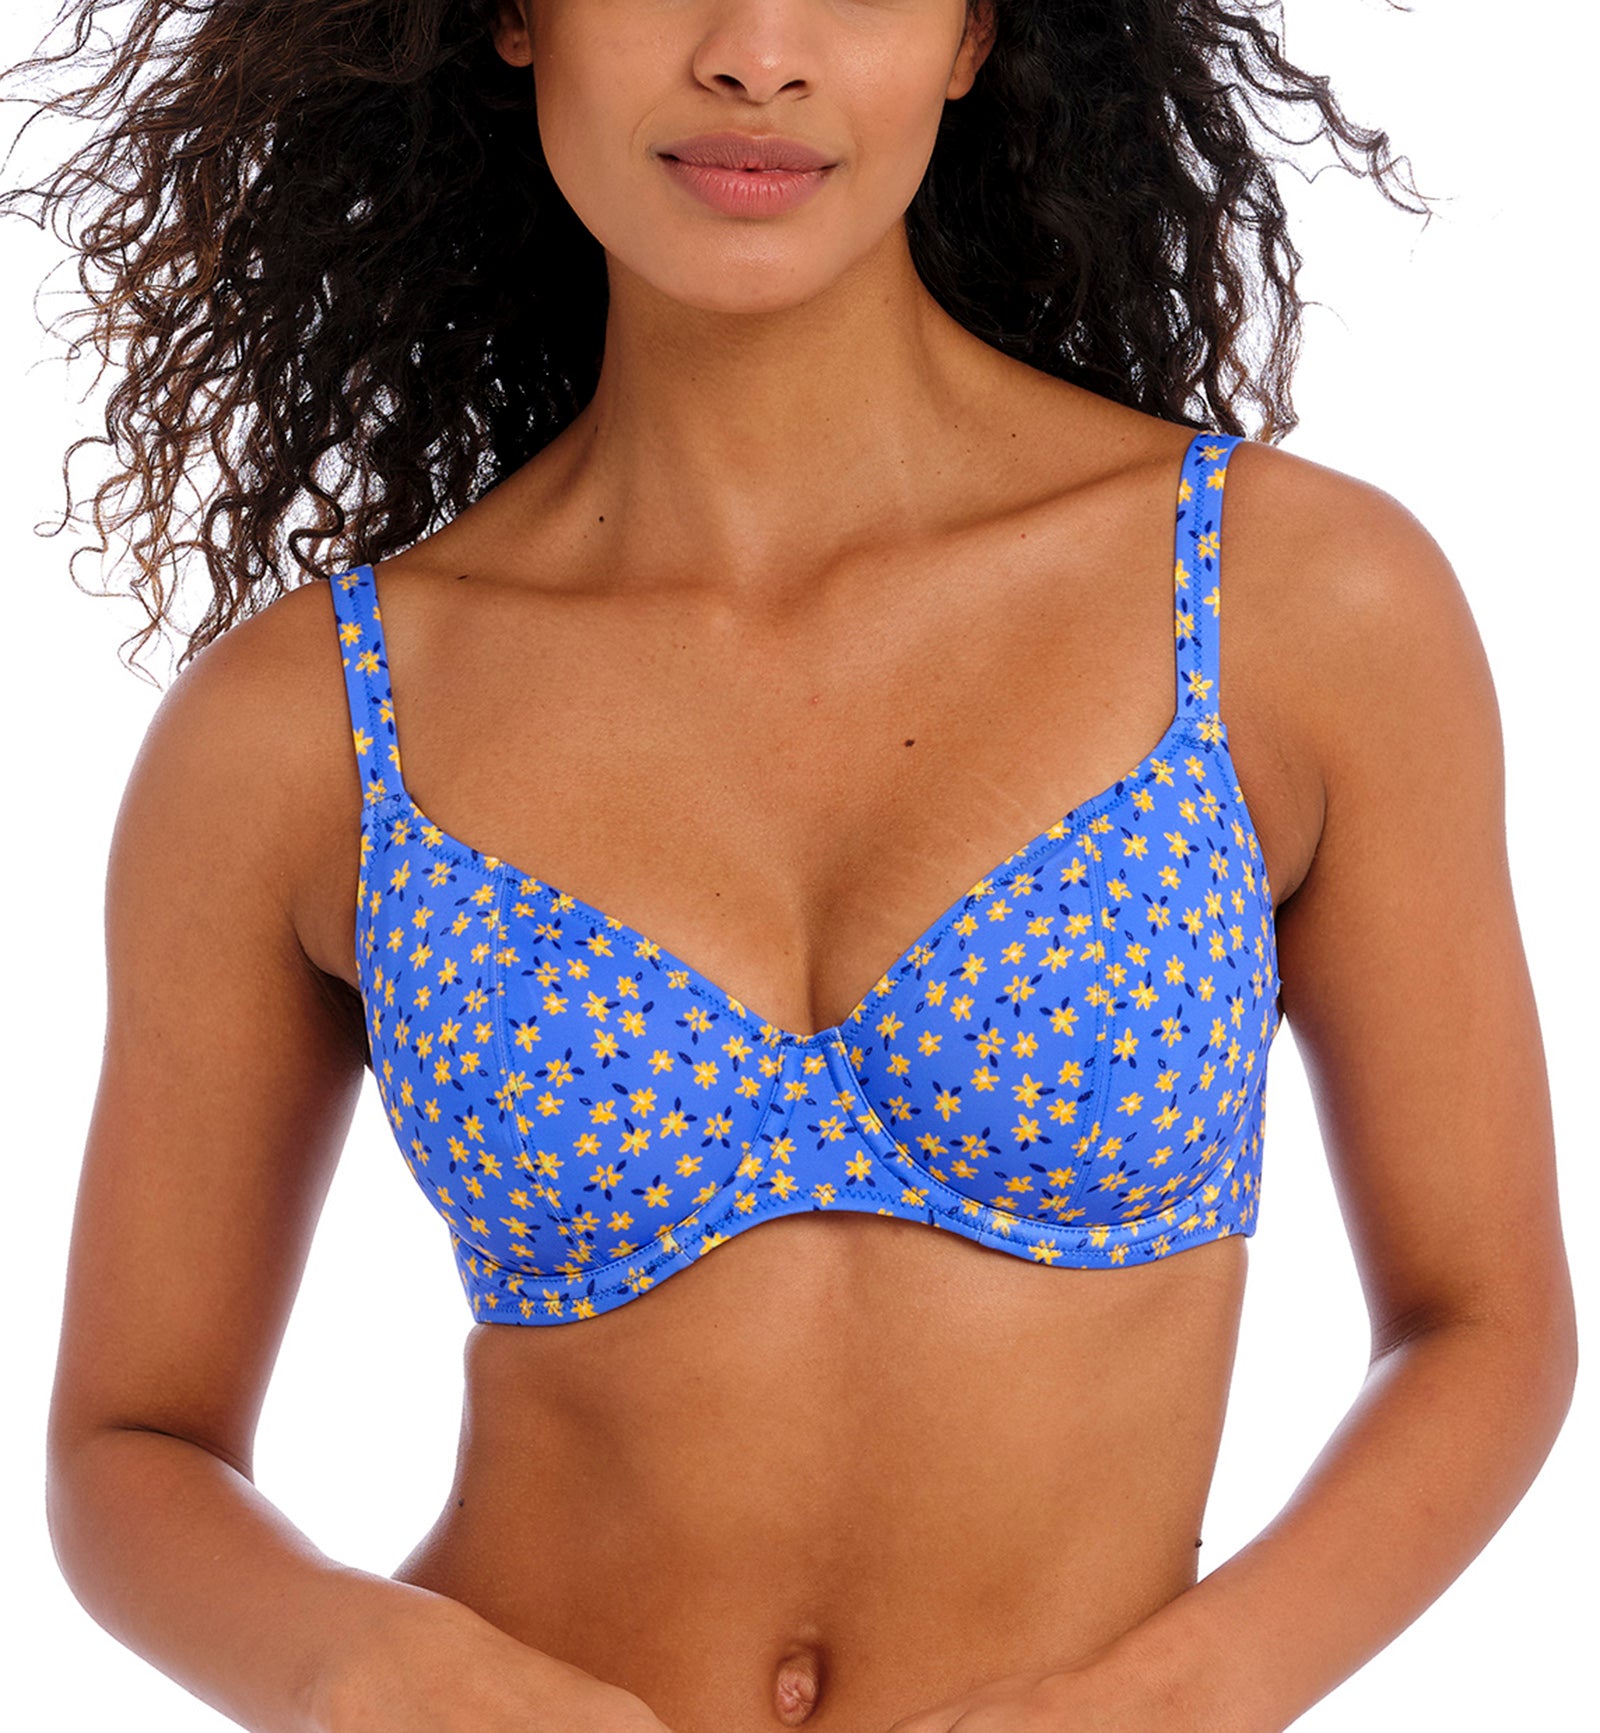 Freya Garden Disco Underwire Plunge Bikini Top (204302),28FF,Bluebell - Bluebell,28FF